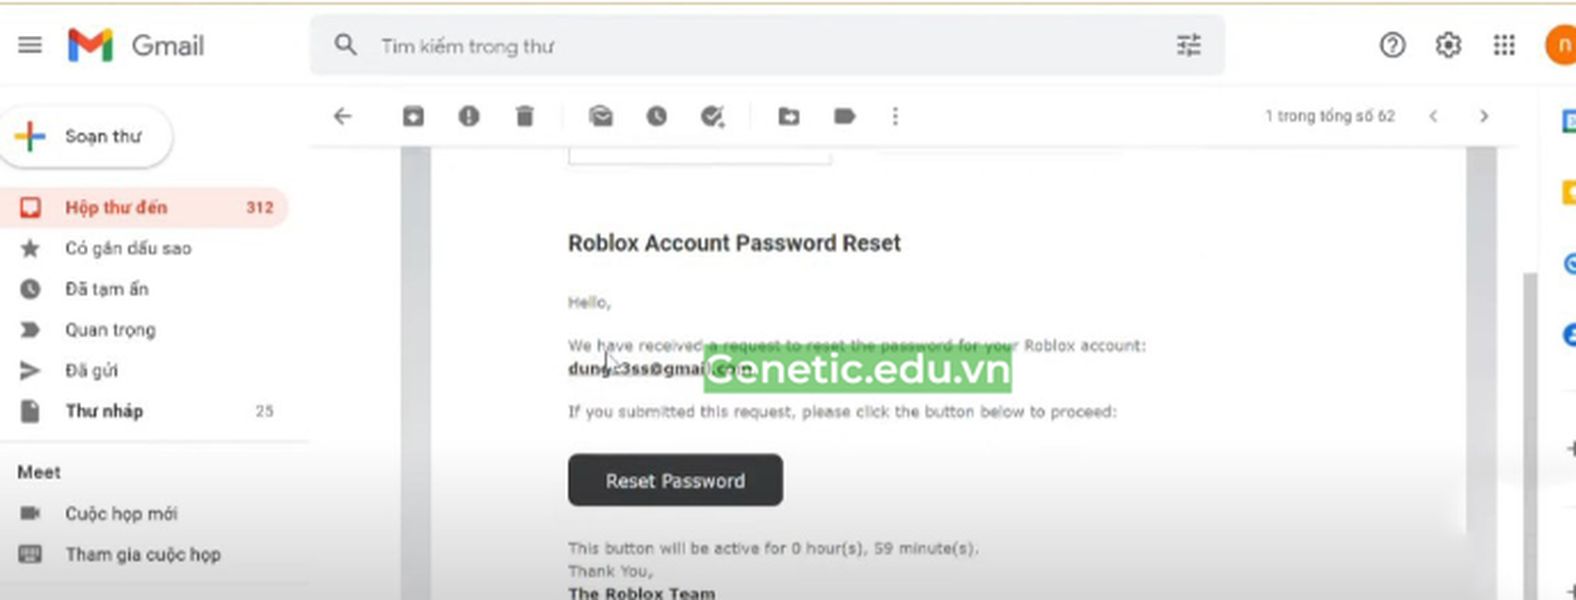 Nhấn "Reset password"